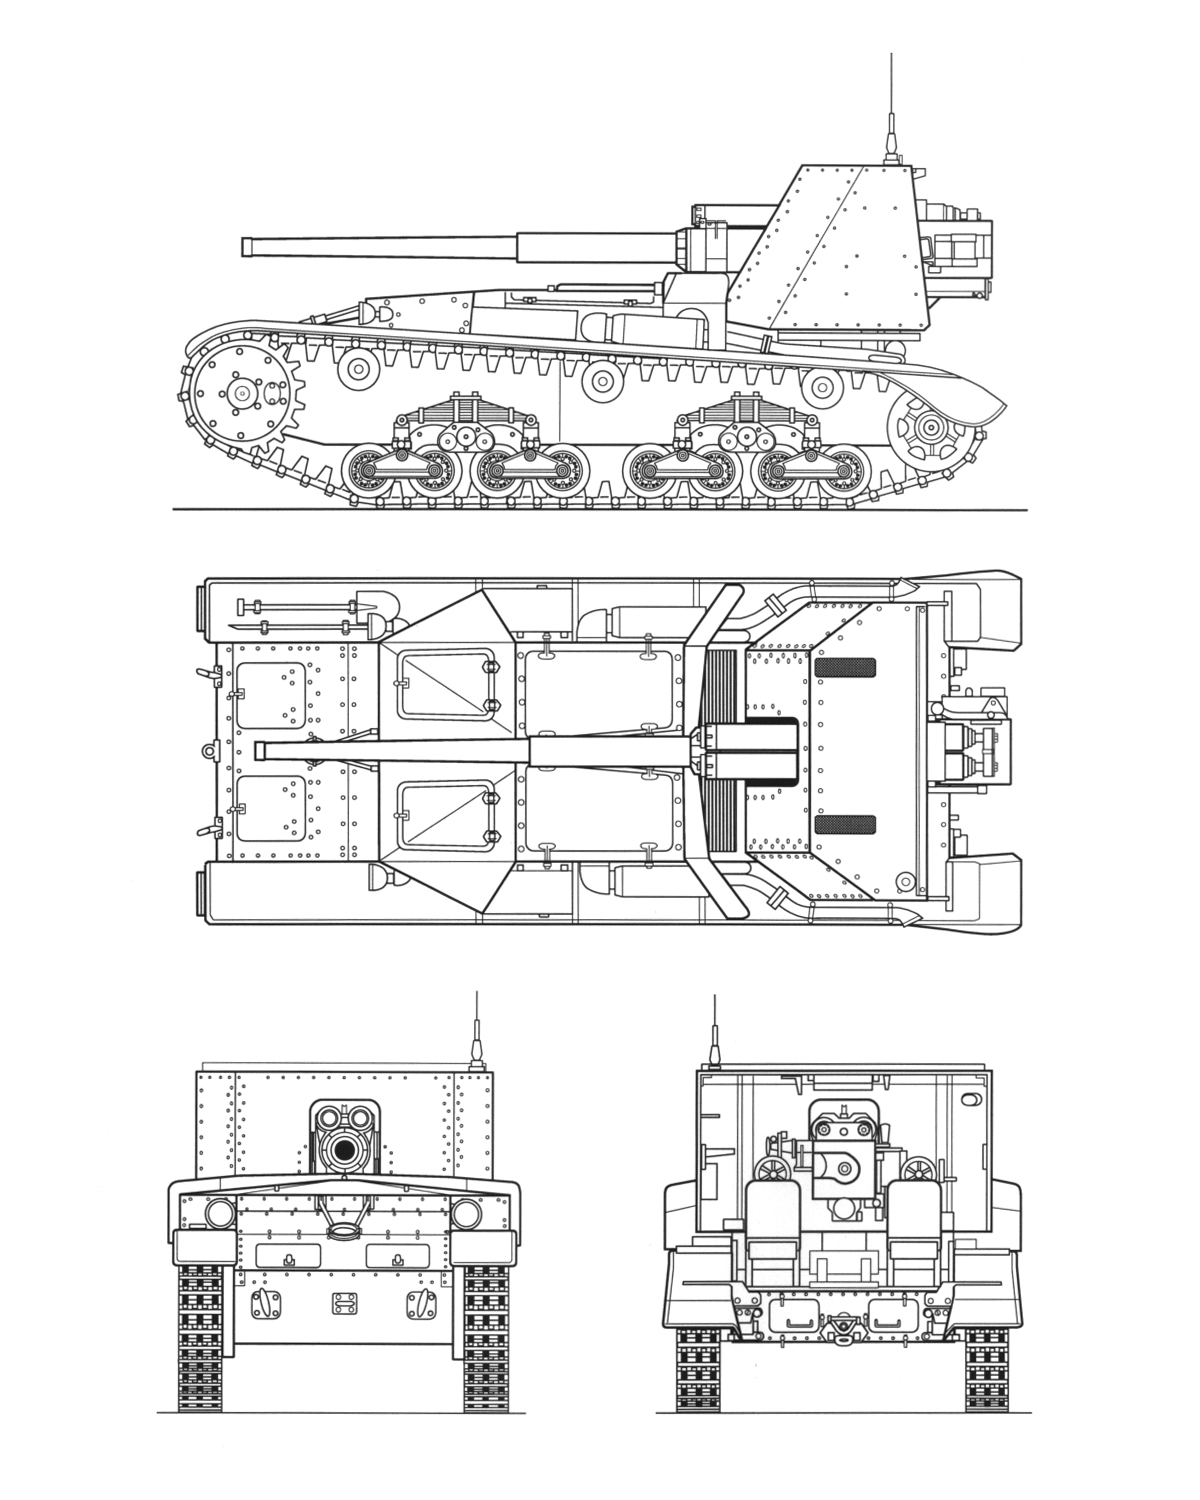 Semovente M41M da 90/53